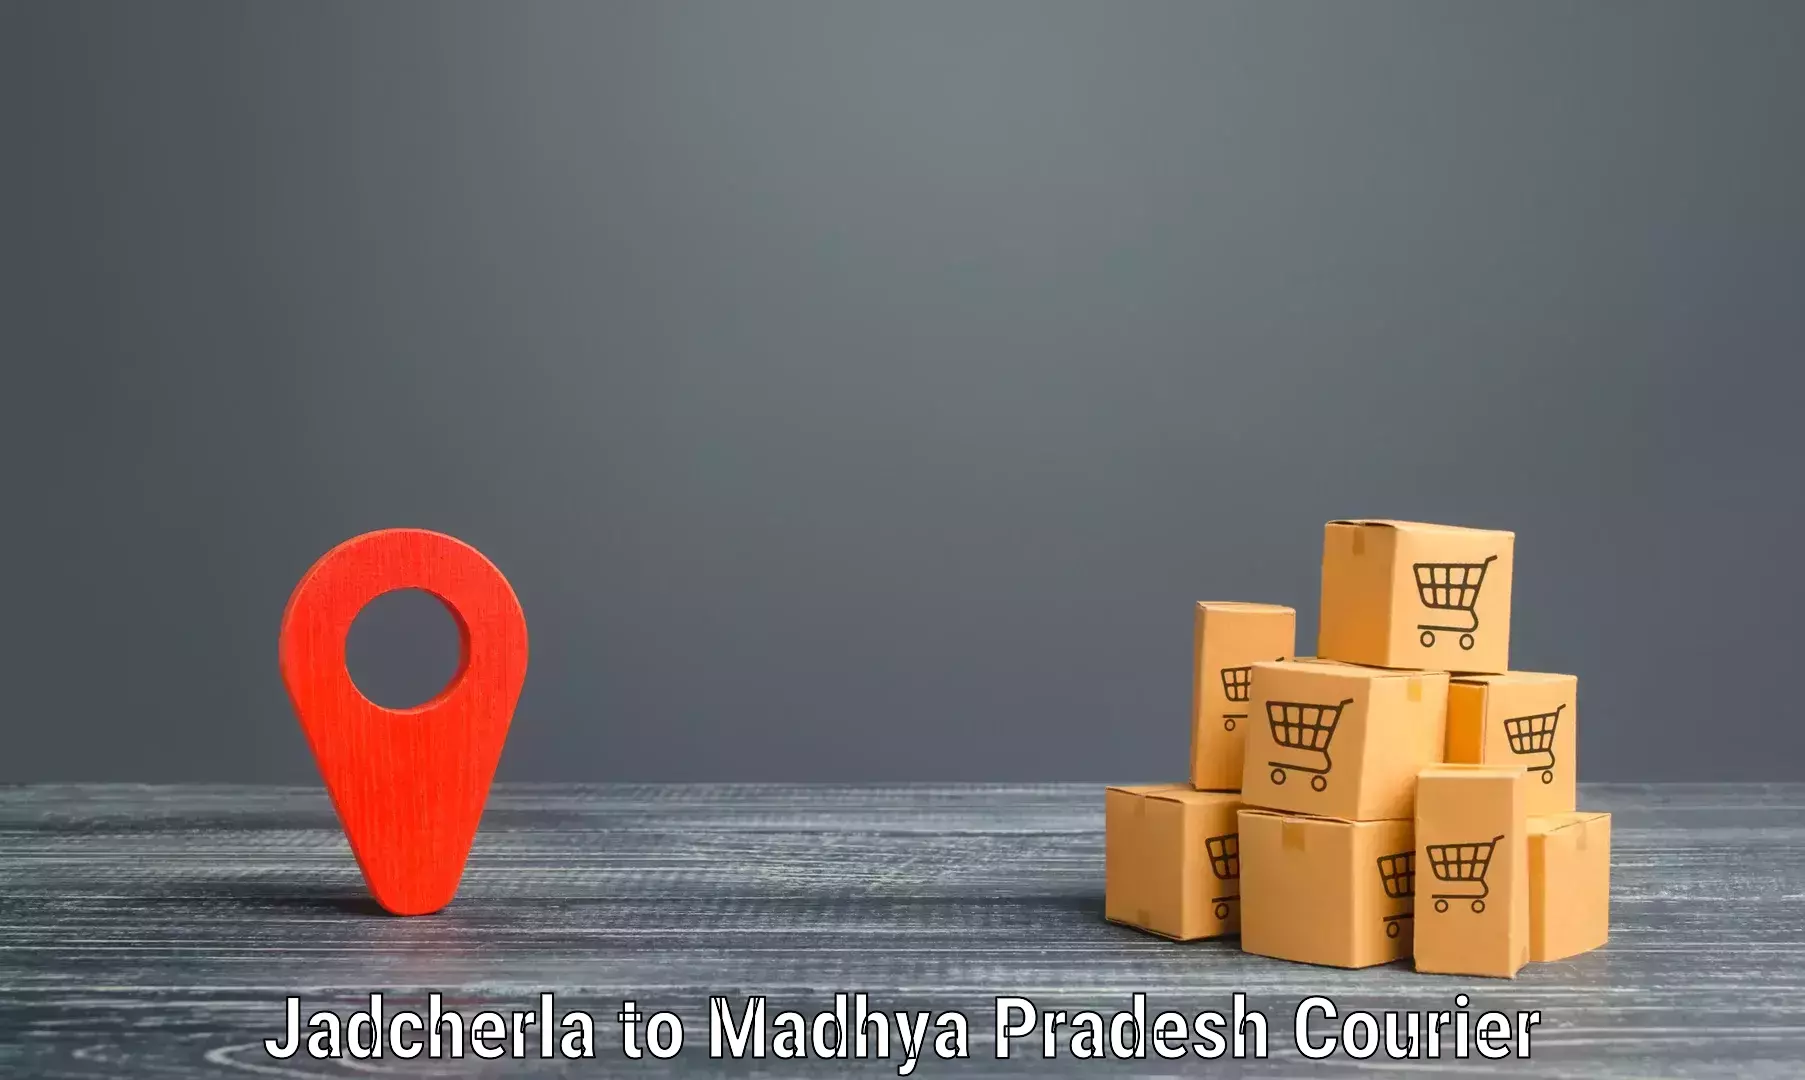 Advanced delivery network Jadcherla to Madhya Pradesh